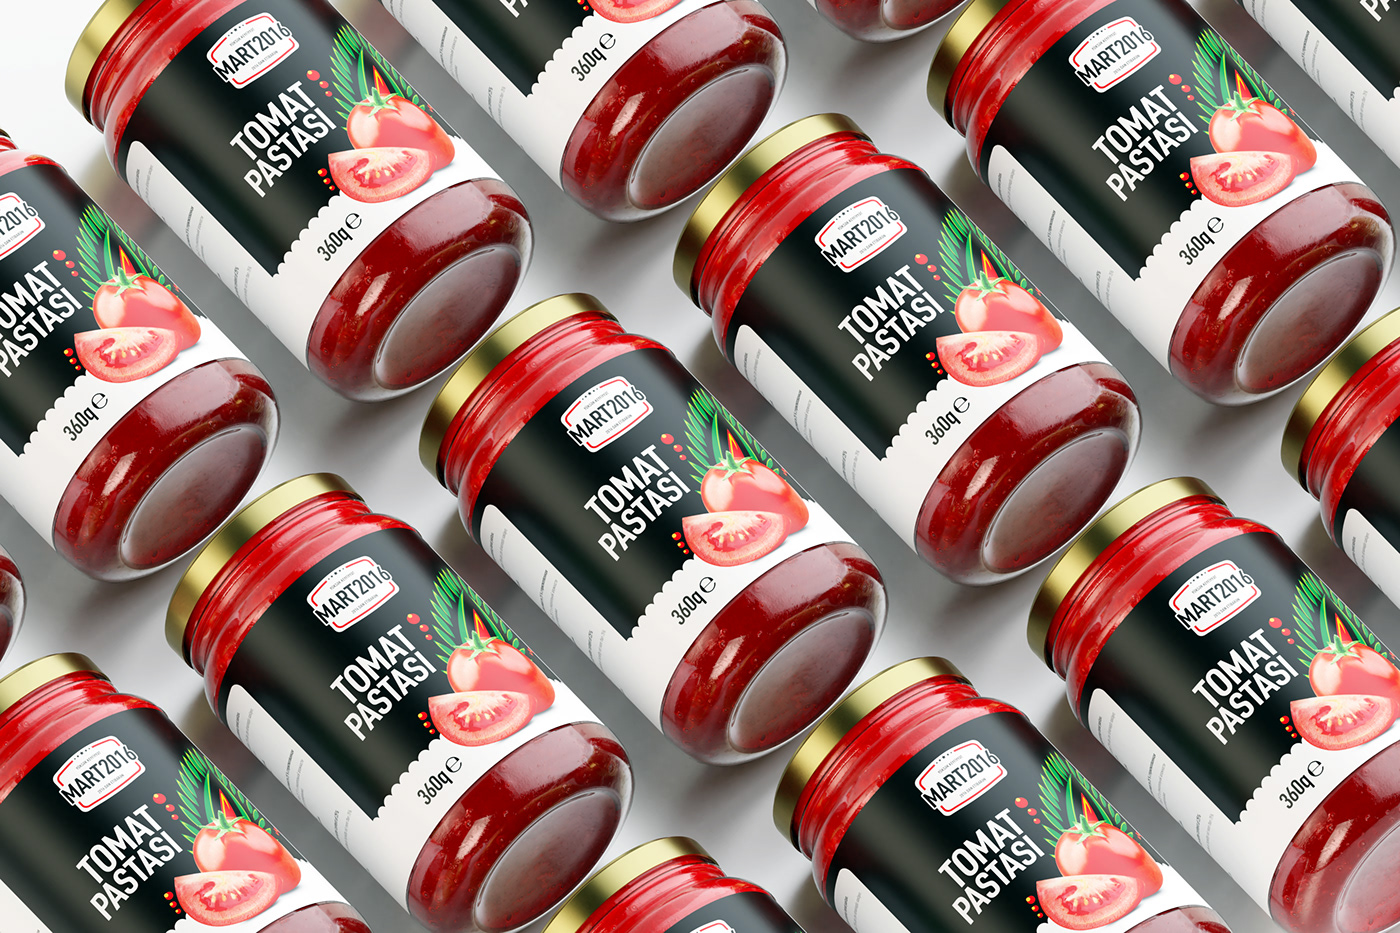 Tomato Paste томатная паста 3d Product modeling blender 3d blender OBA Retail Chain OBA MARKETLER oba market OBA OBA MARKETLƏR ŞƏBƏKƏSİ